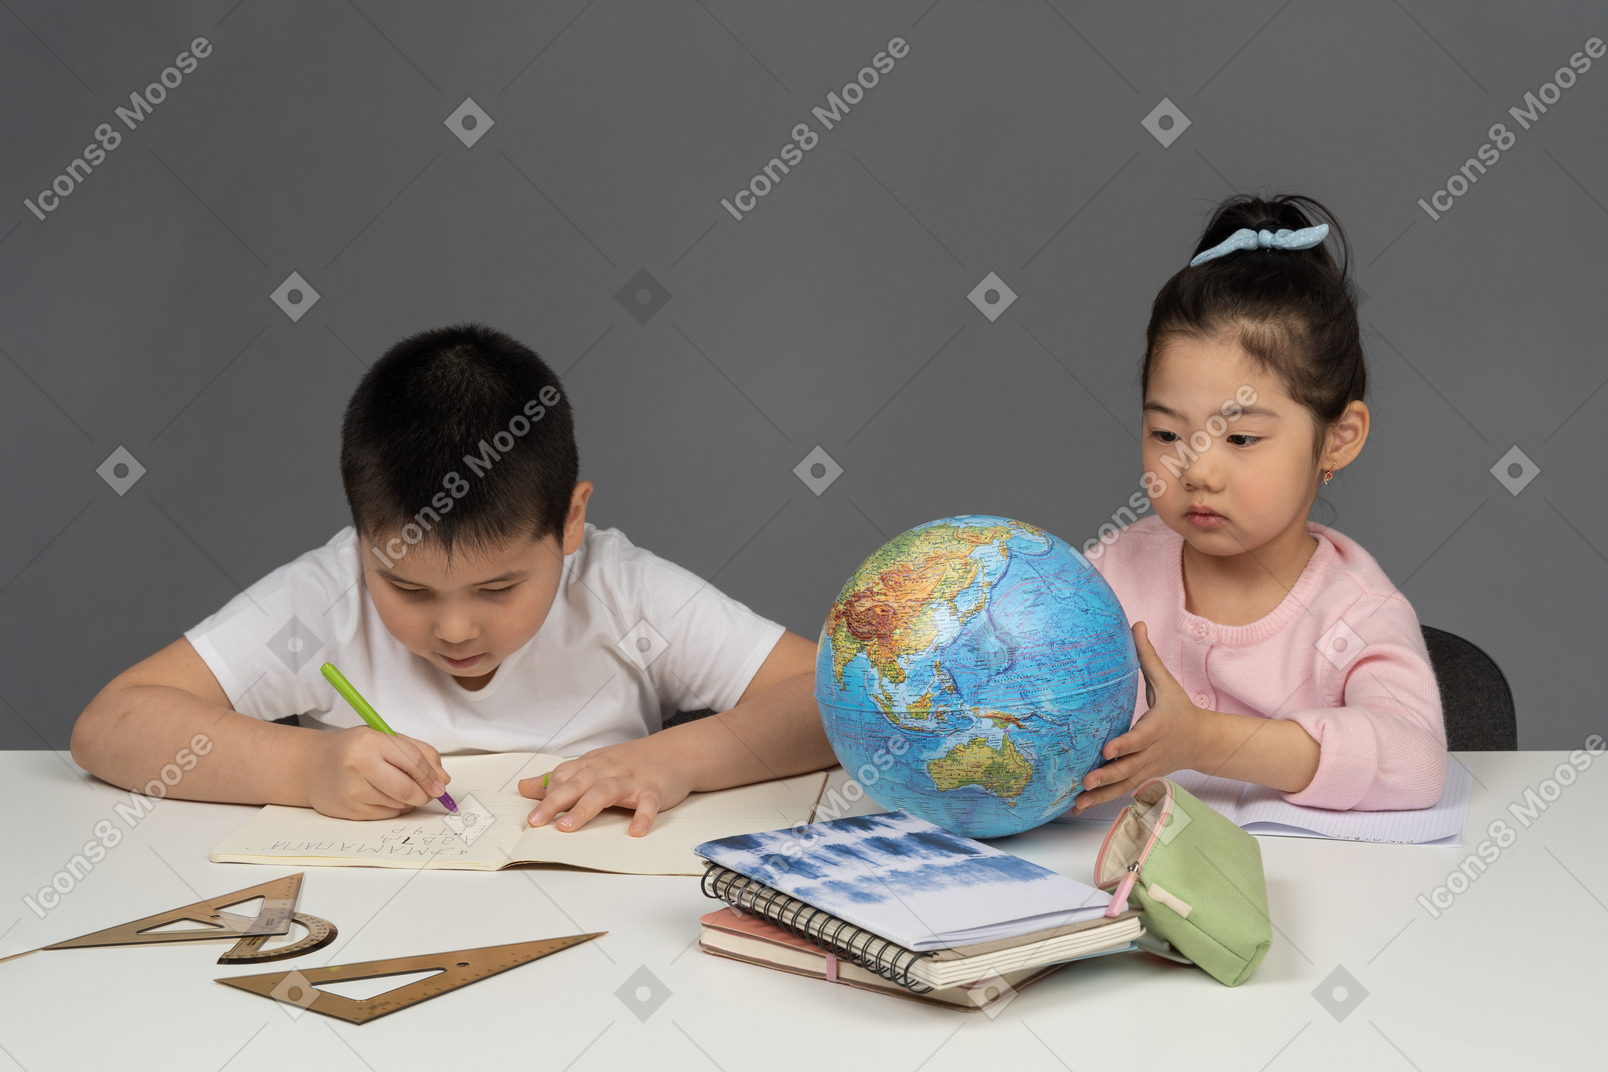 Ragazzo che fa i compiti e ragazza che guarda un globo